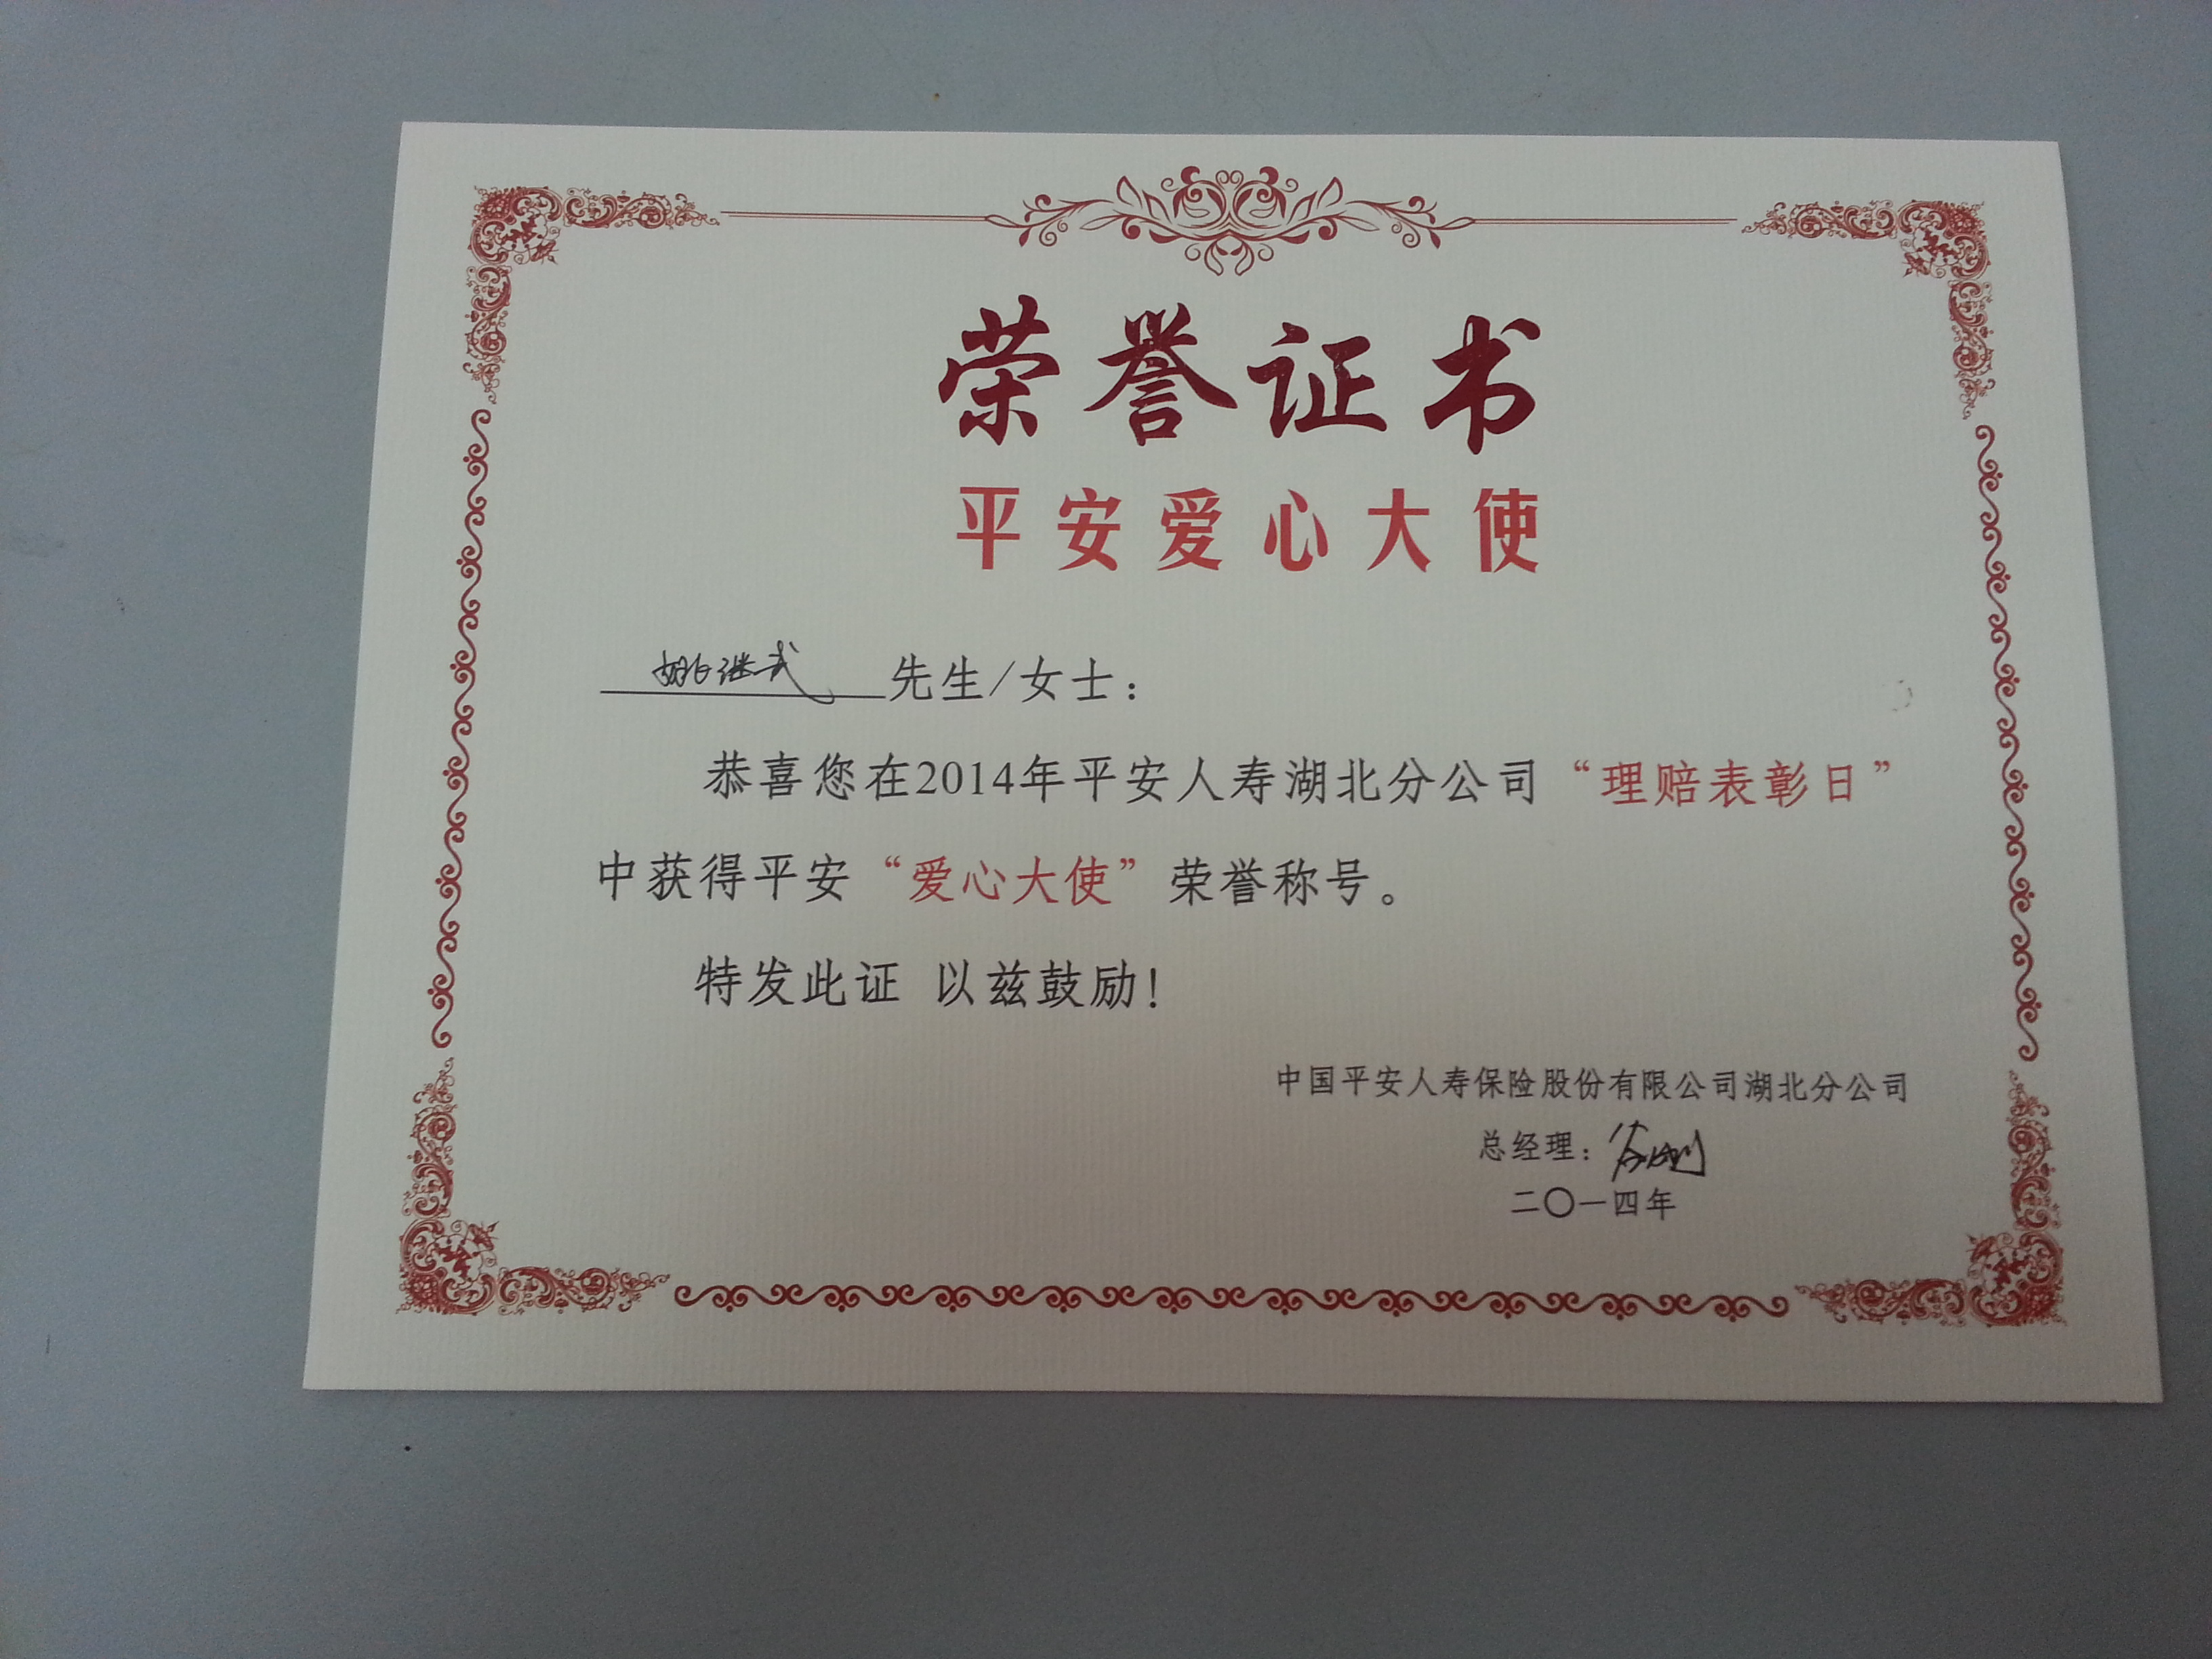 证书名称:爱心大使发证机关:中国平安人寿保险公司湖北分公司